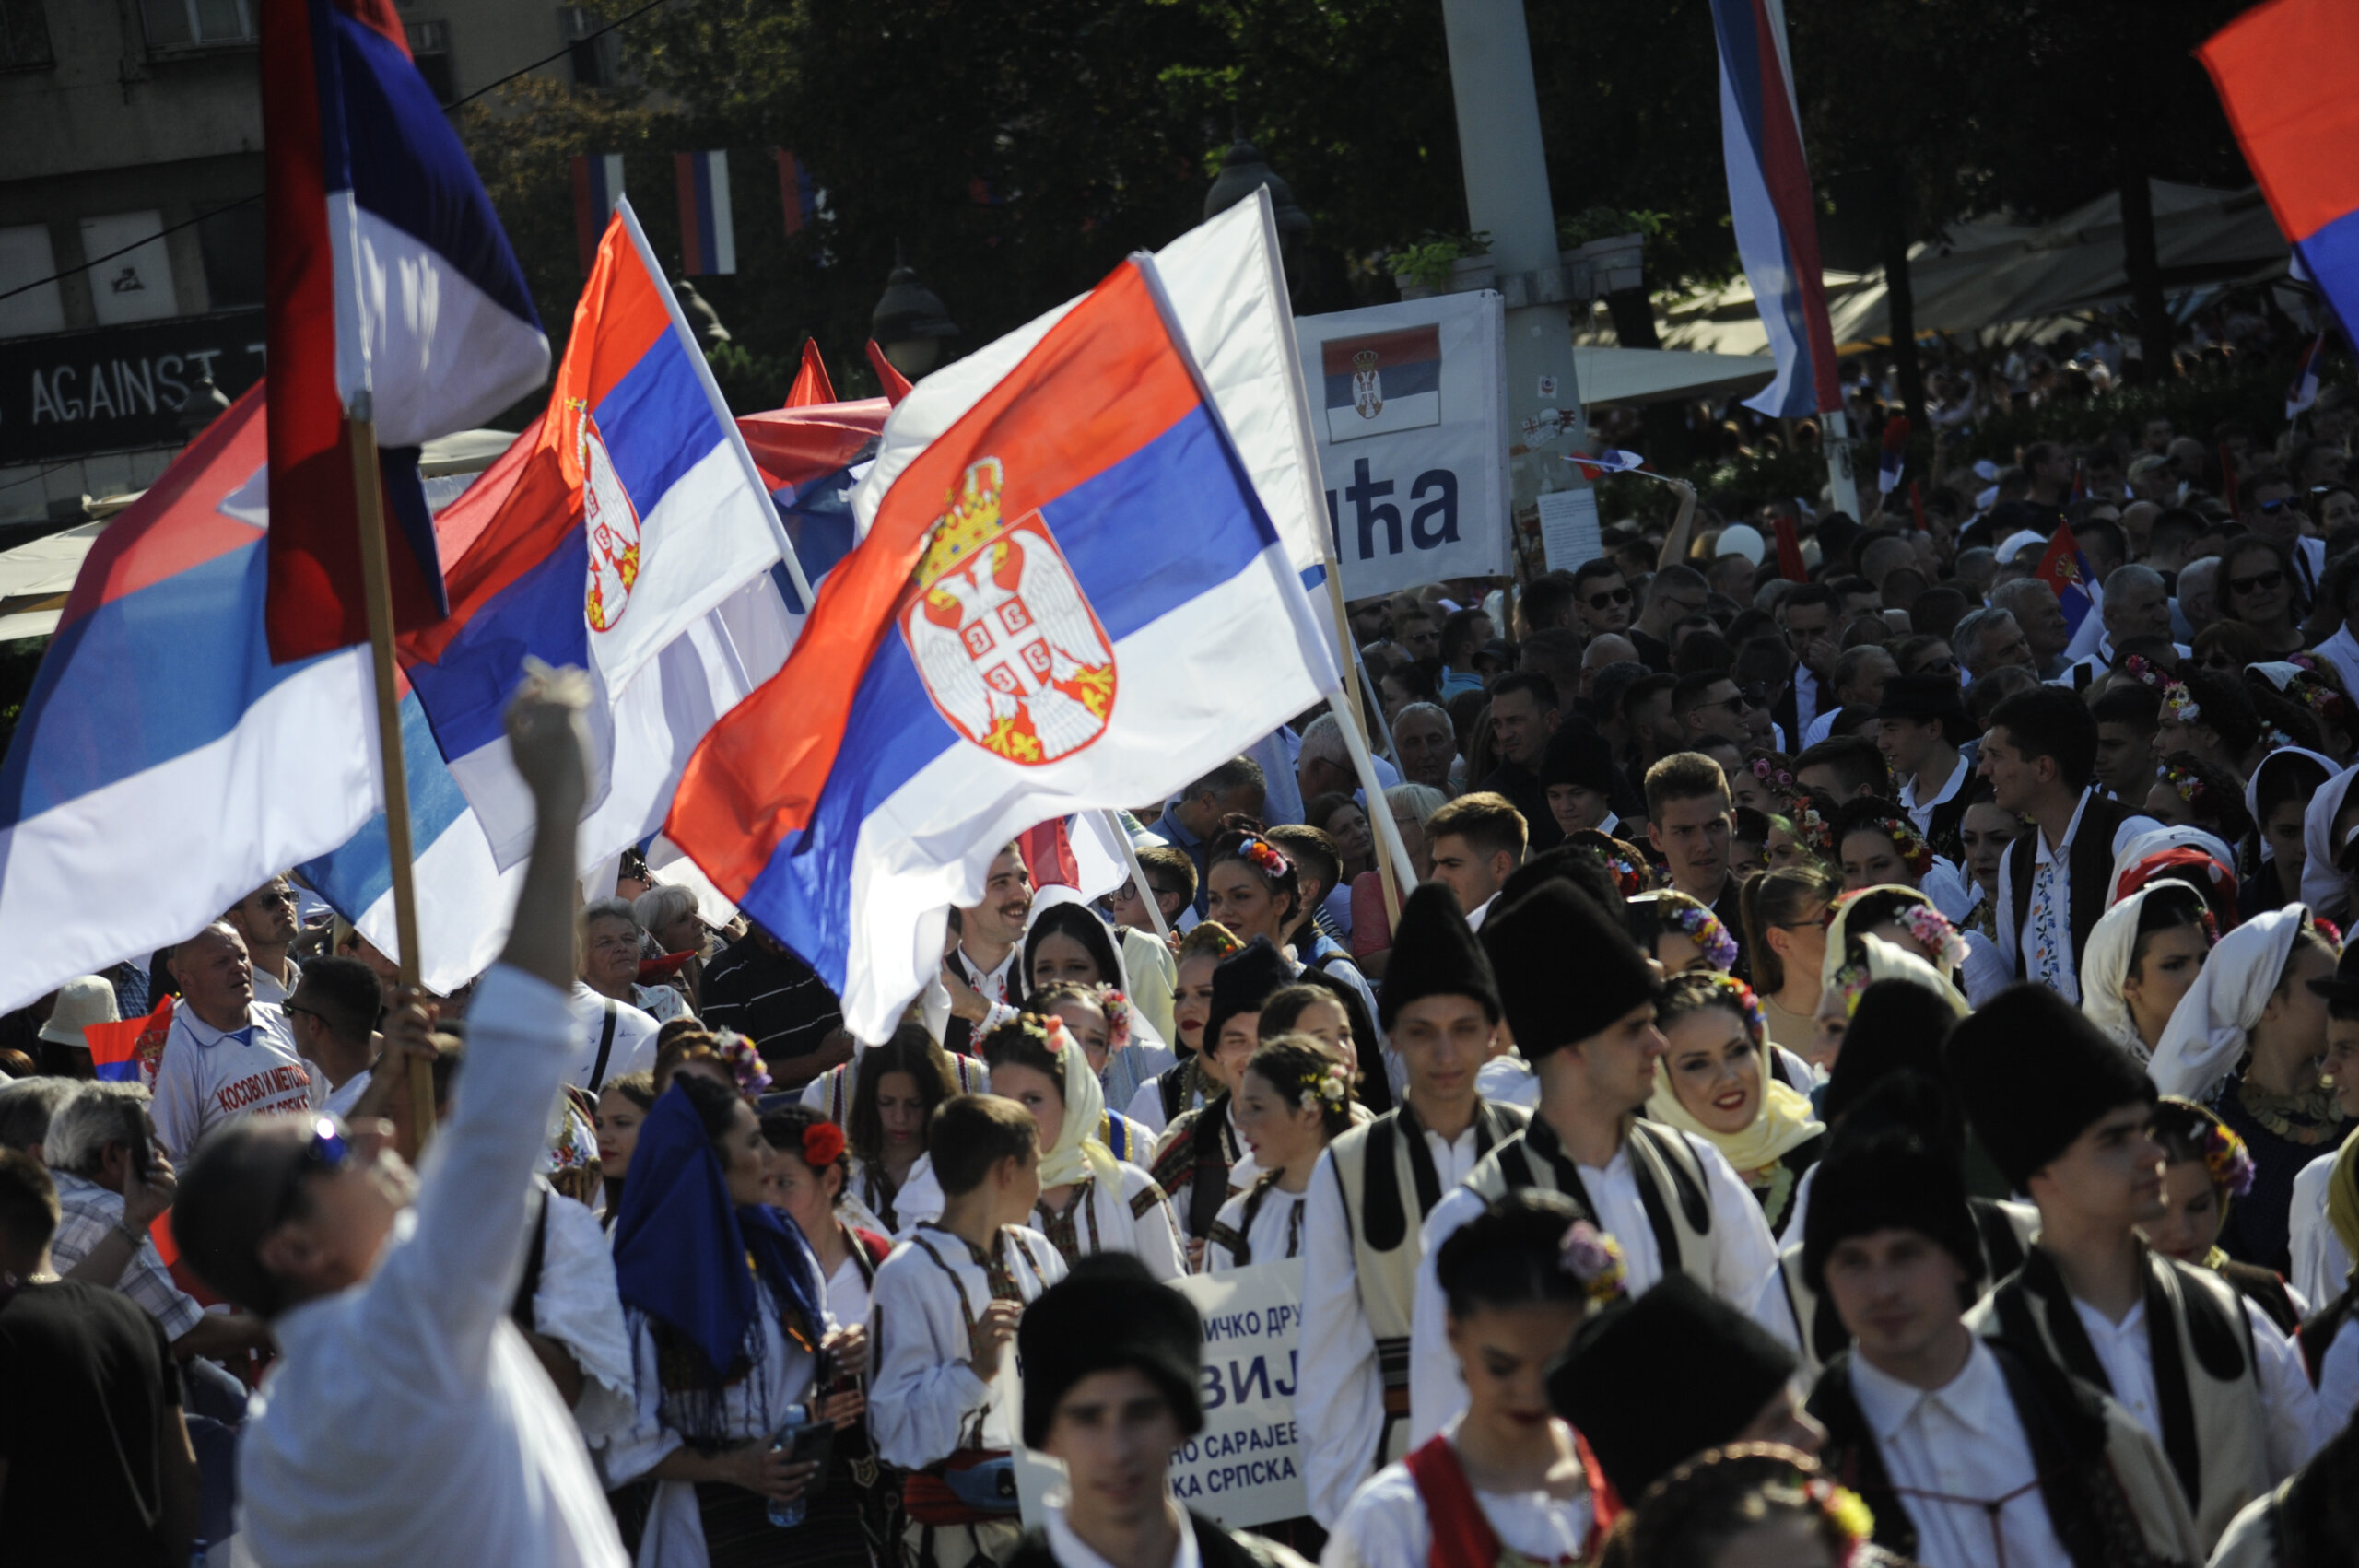 (FOTO) Kako je izgledala manifestacija "Jedan narod, jedan sabor - Srbija i Srpska" na Trgu republike u fotografijama? 12